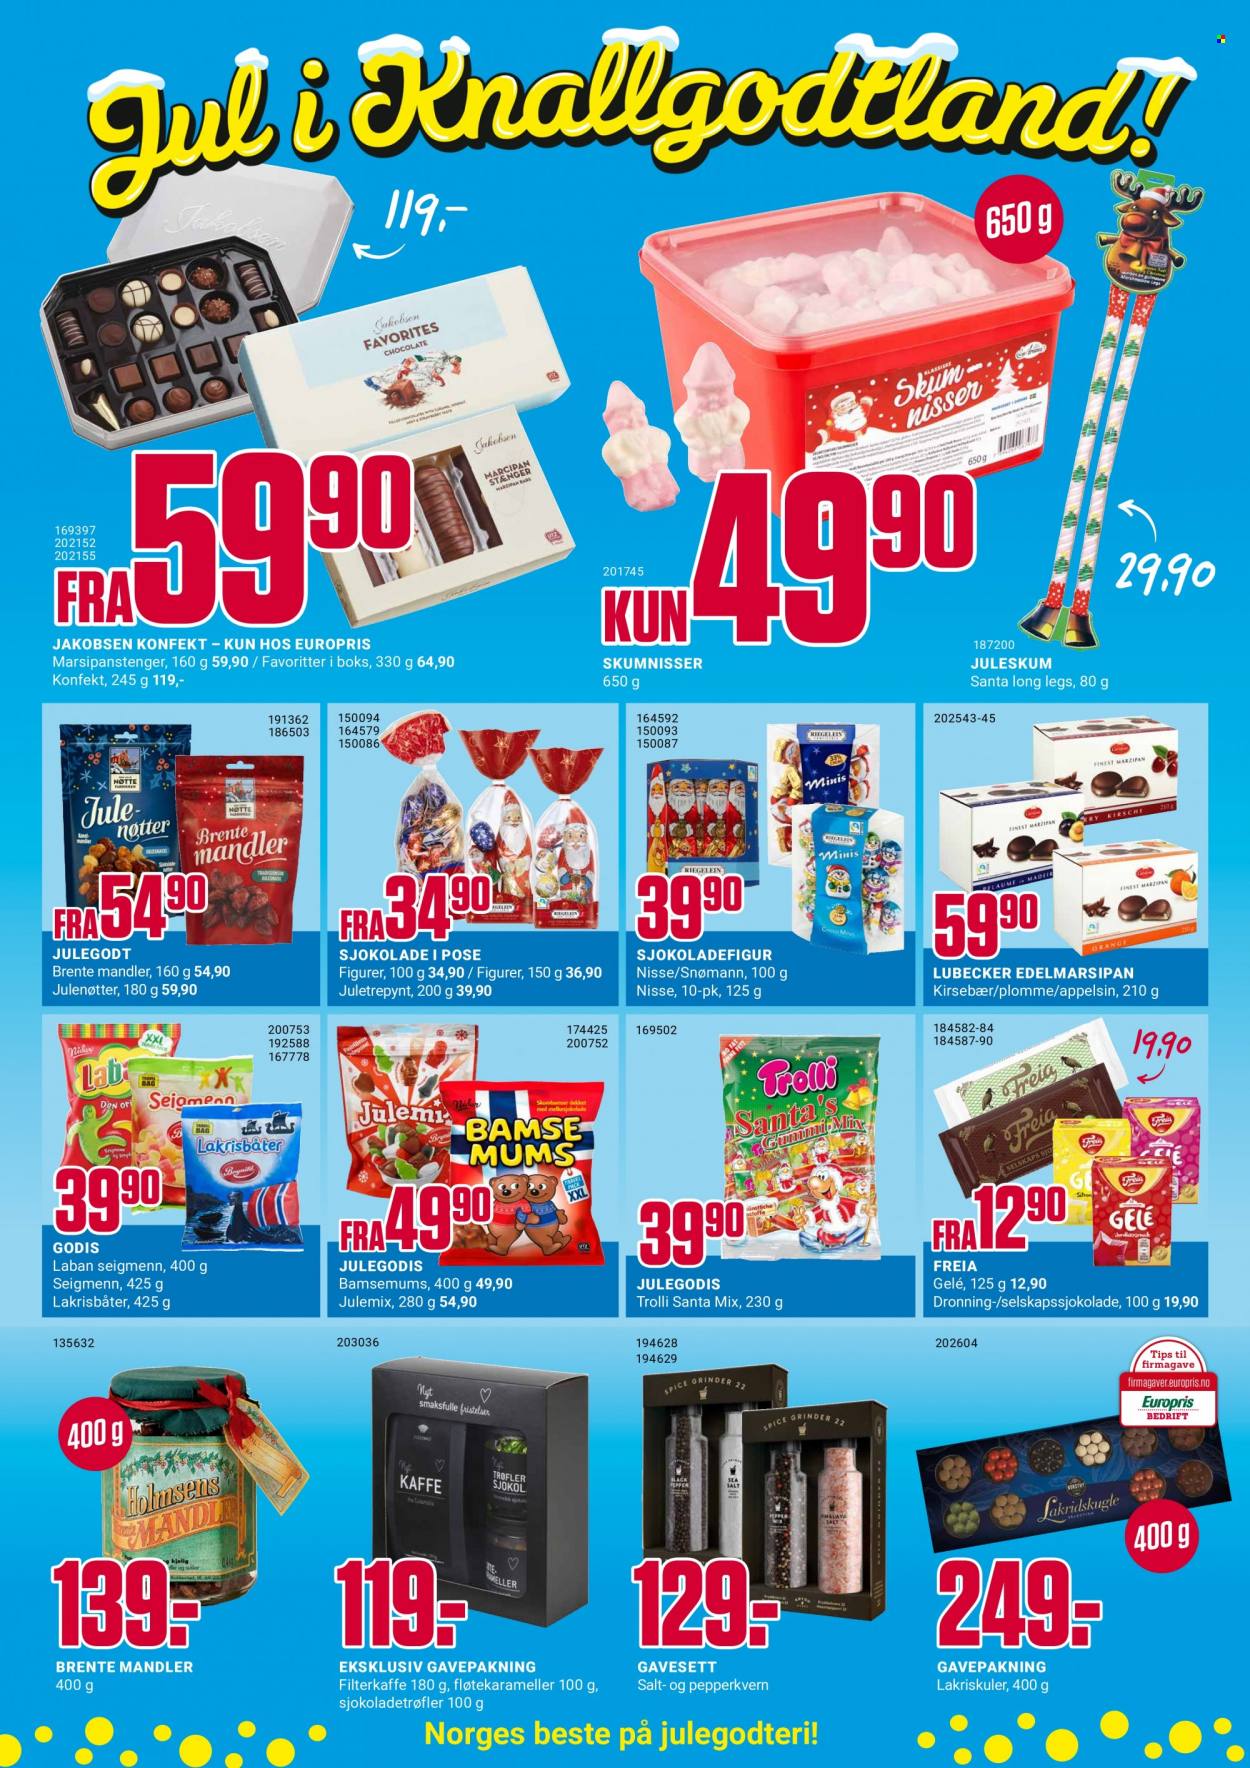 thumbnail - Kundeavis Europris - 15.11.2021 - 20.11.2021 - Produkter fra tilbudsaviser - gelé, sjokolade, Freia, nøtter, figur. Side 2.